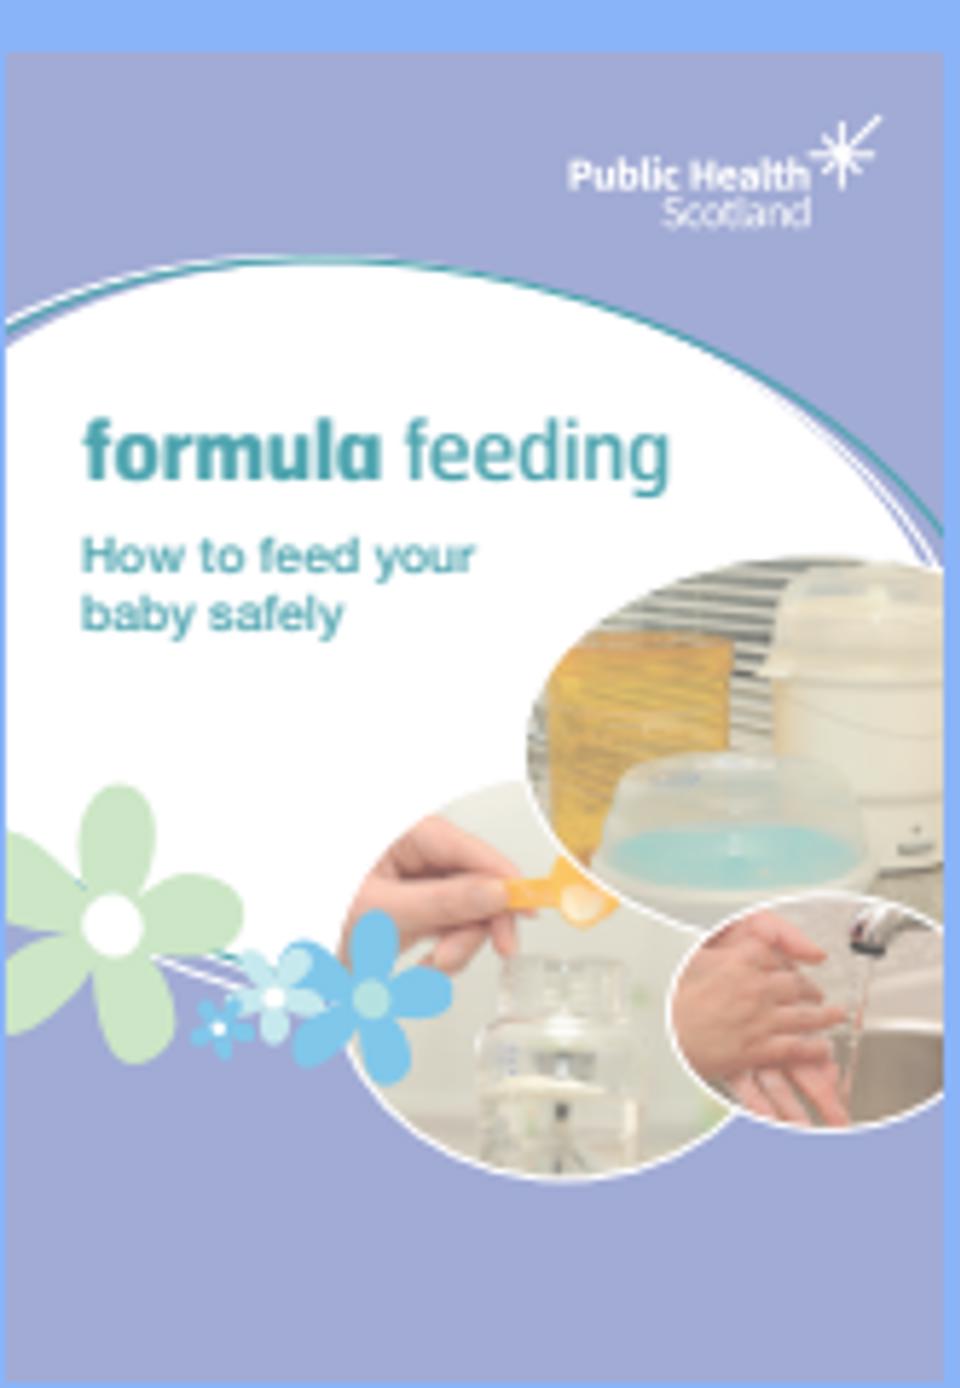 Formula Feeding Your Baby